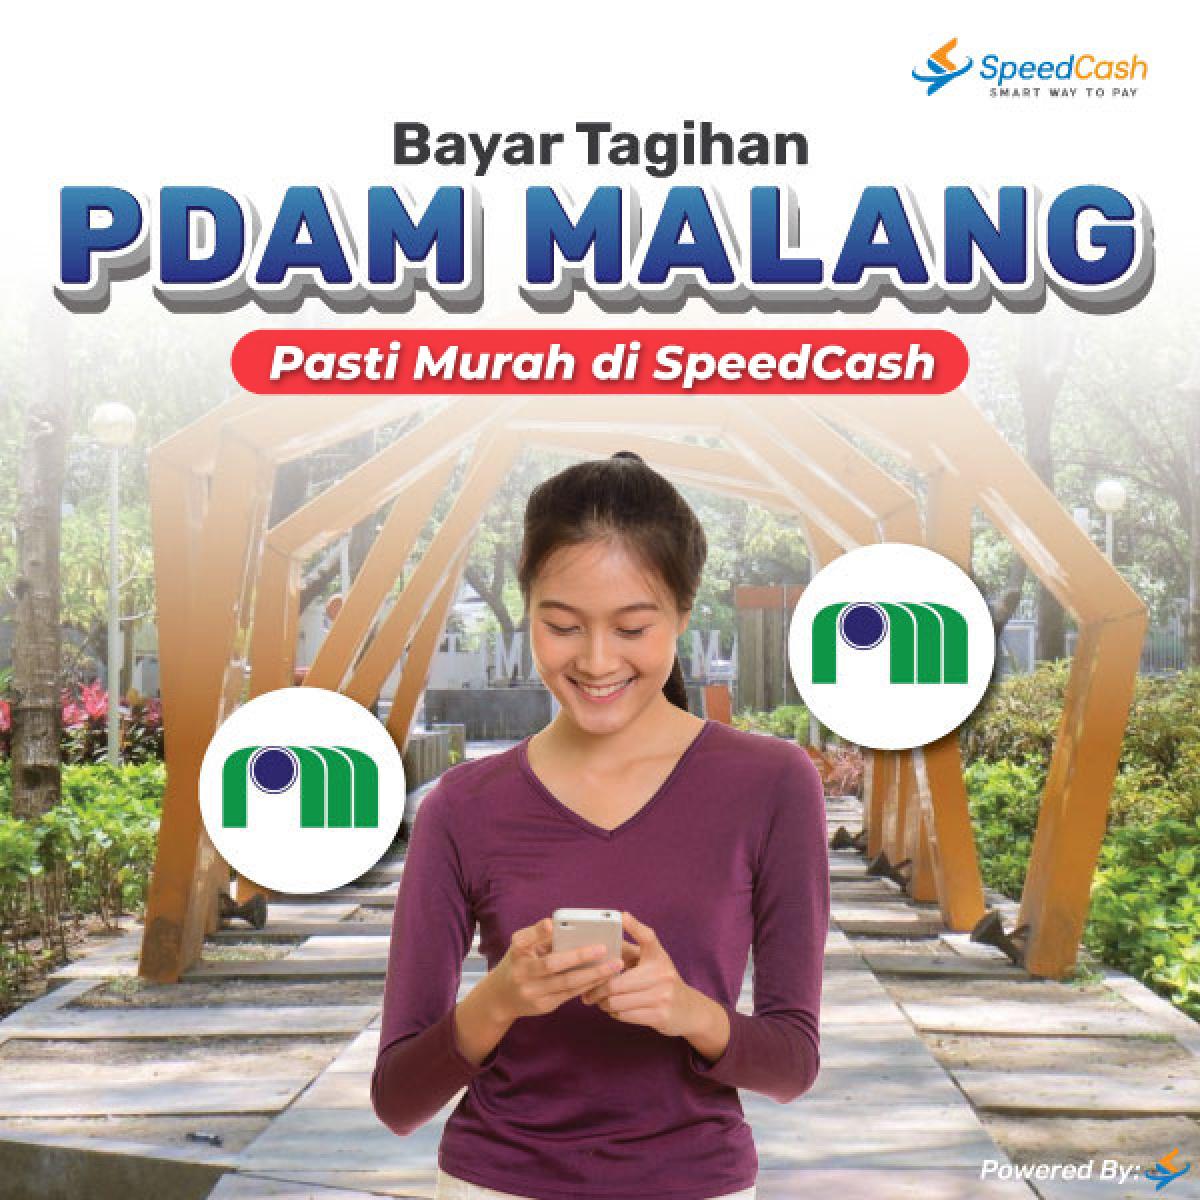 Cek tagihan pdam Malang dan bayar bisa melalui online - SpeedCash